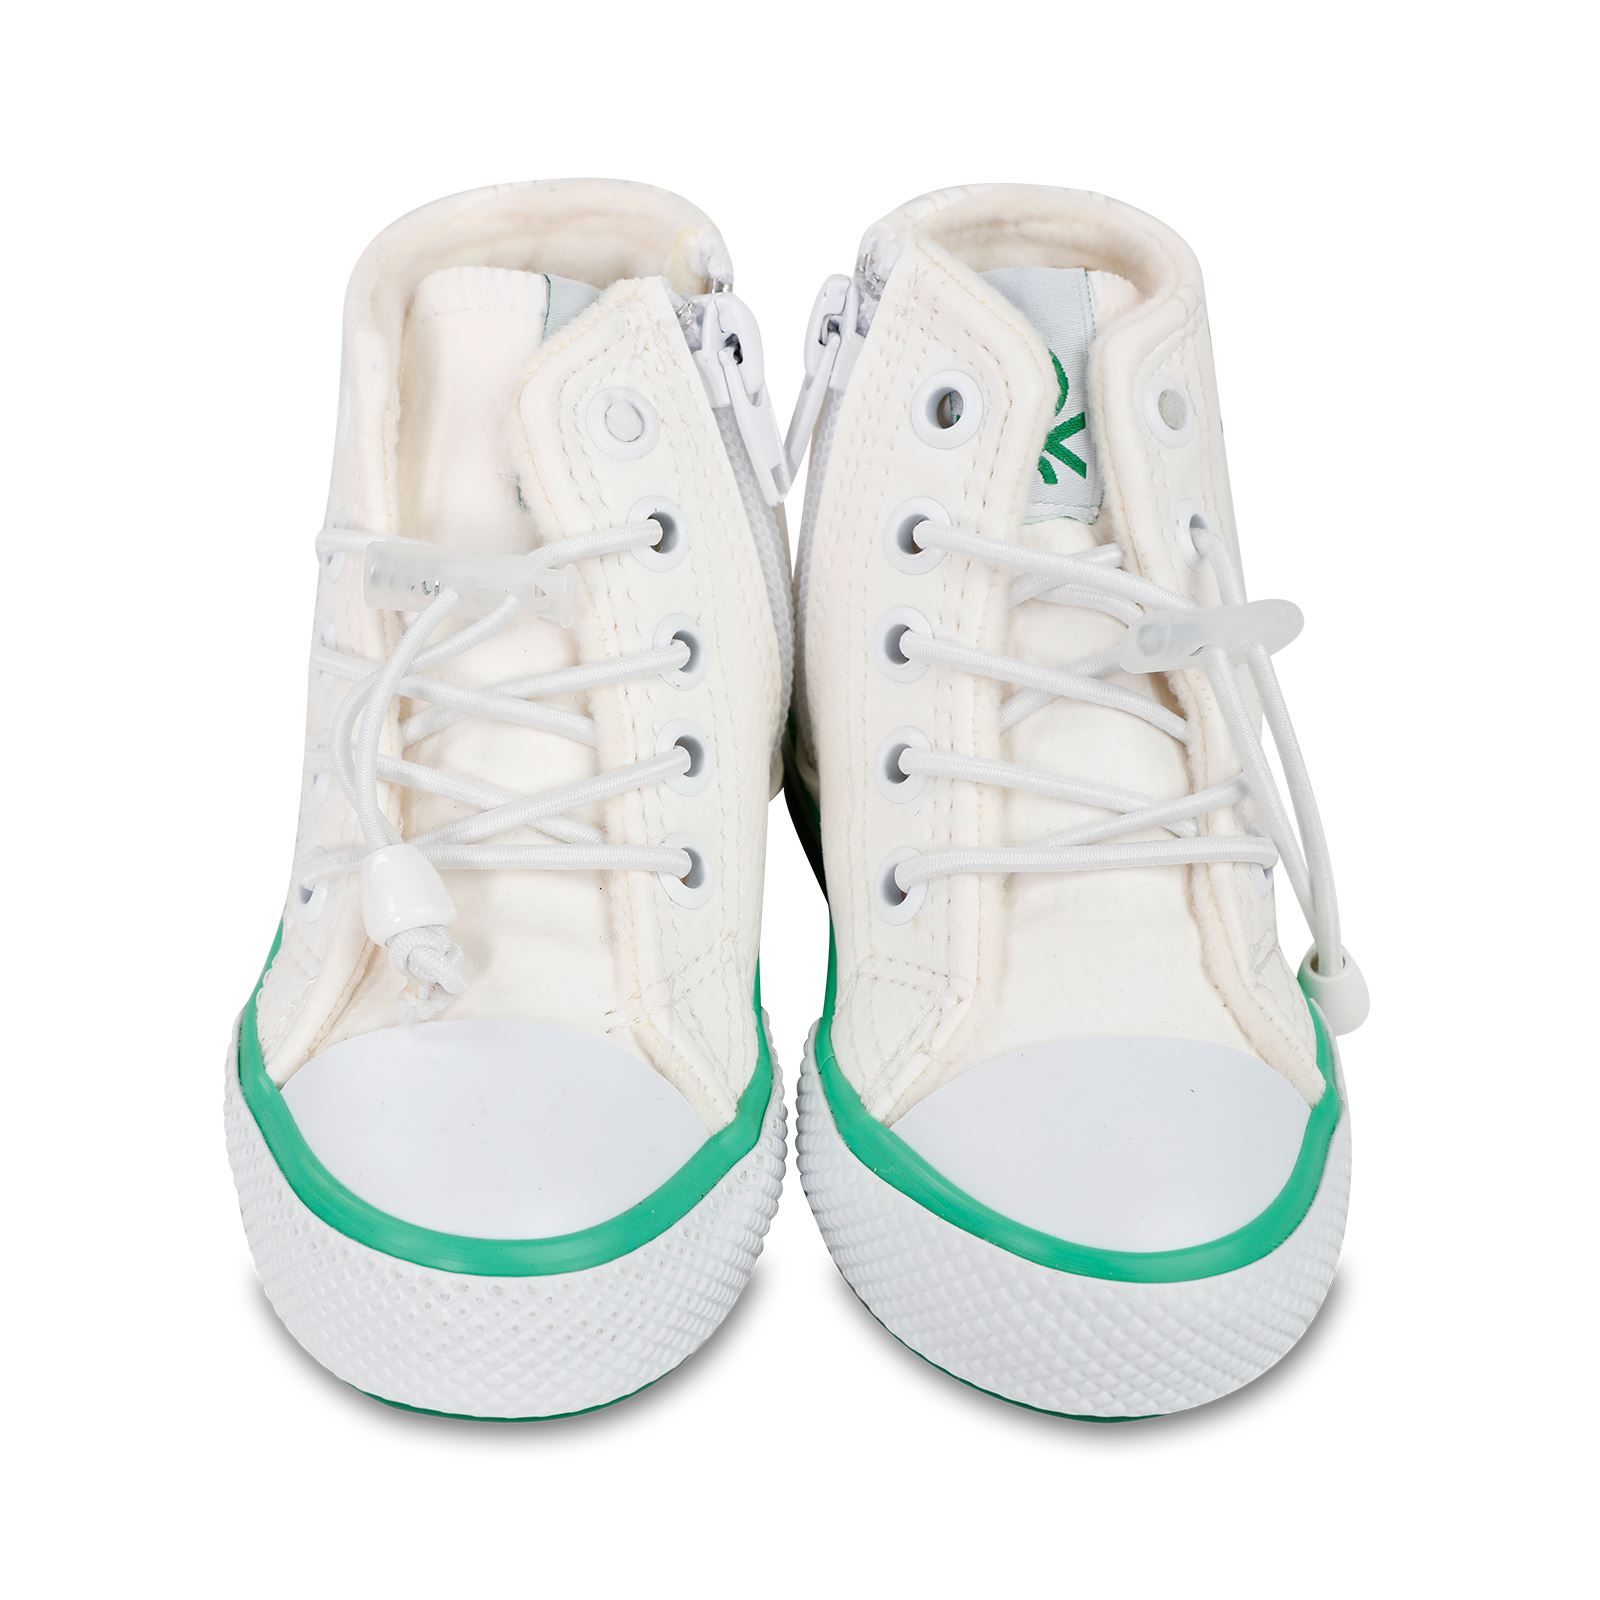 Benetton Erkek Çocuk Spor Ayakkabı 22-25 Numara Beyaz